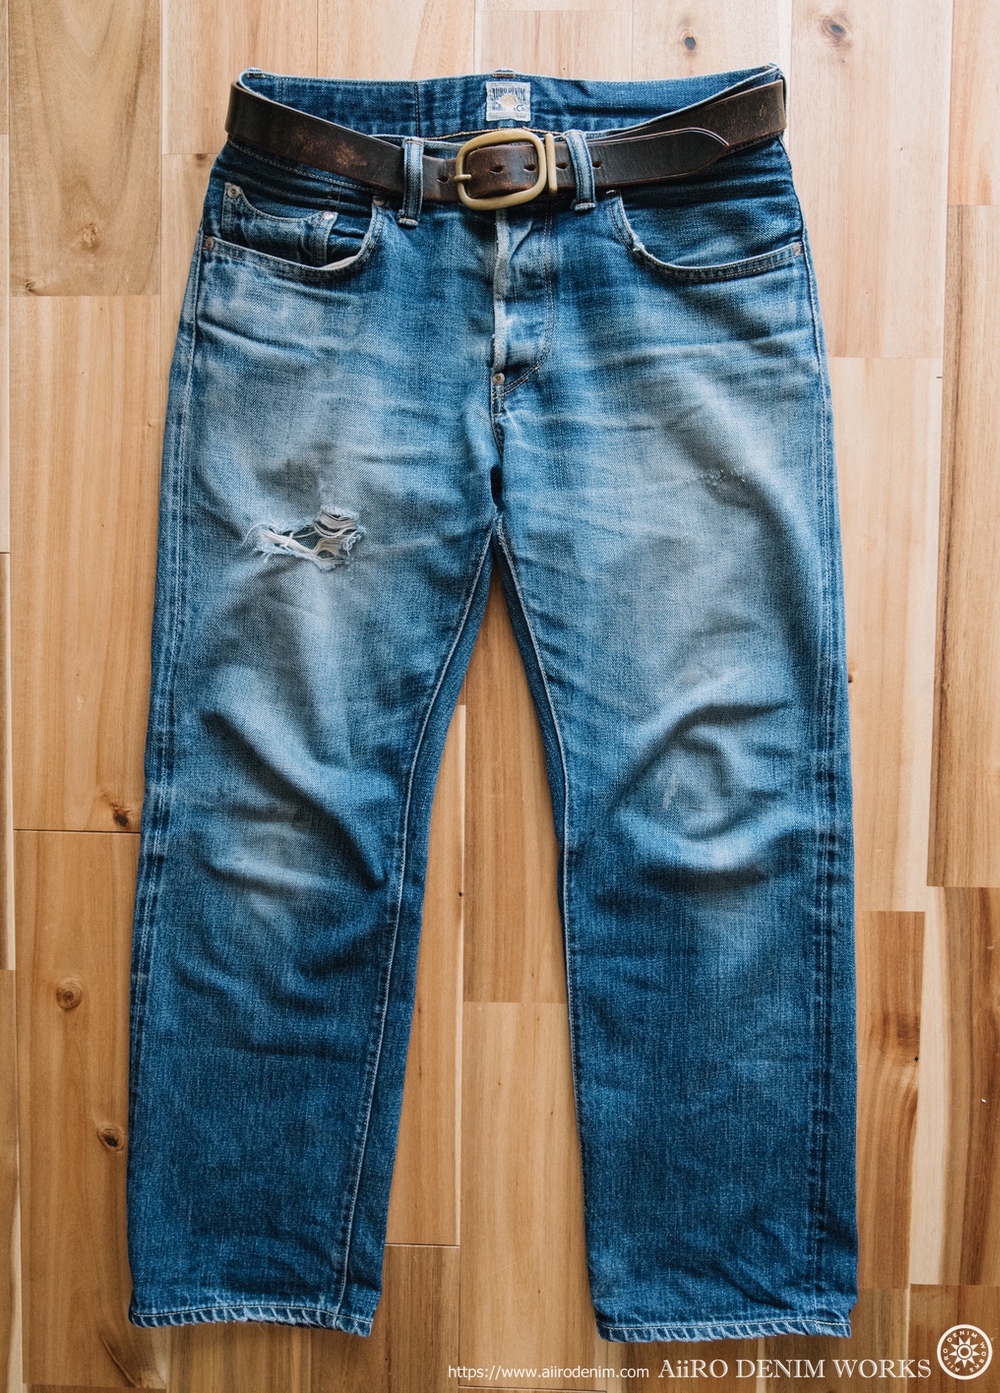 オリジナルジーンズ Cherokee 穿き込み23ヶ月洗濯62回の色落ちレポート Aiiro Denim Works